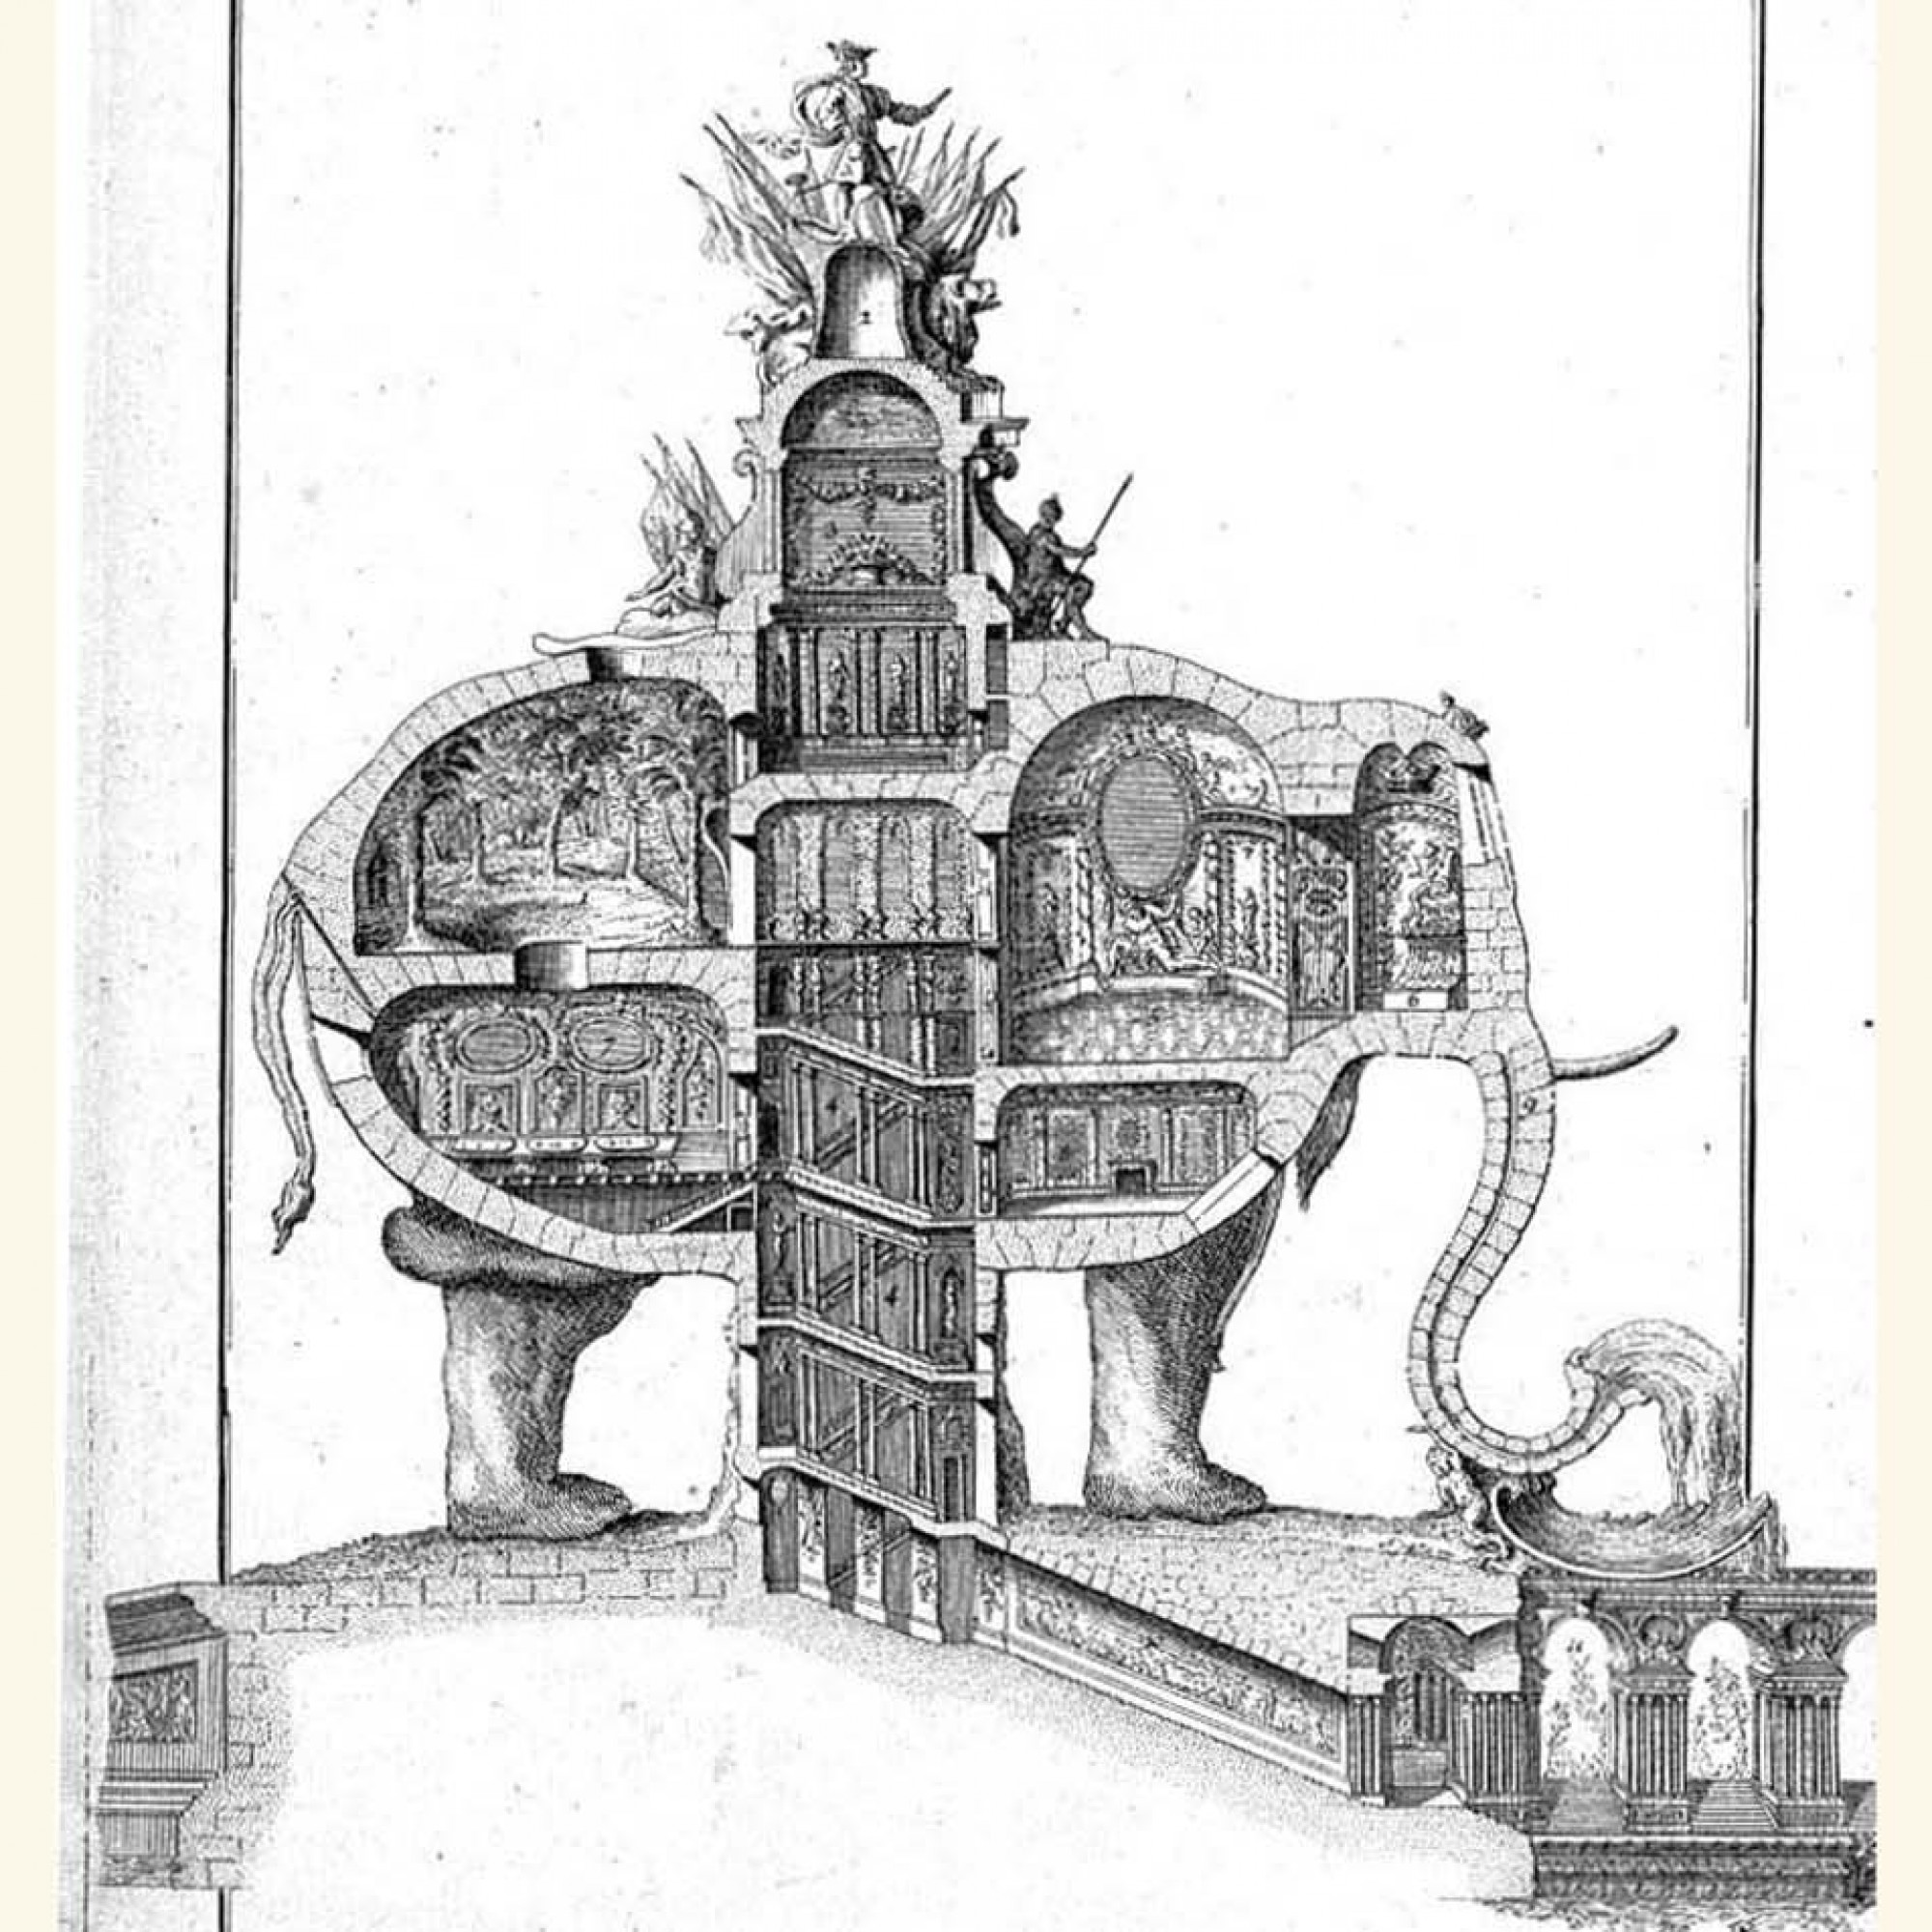 Längsschnitt des Elefantengebäudes nach Plänen von Charles François Ribart de Chamoust.